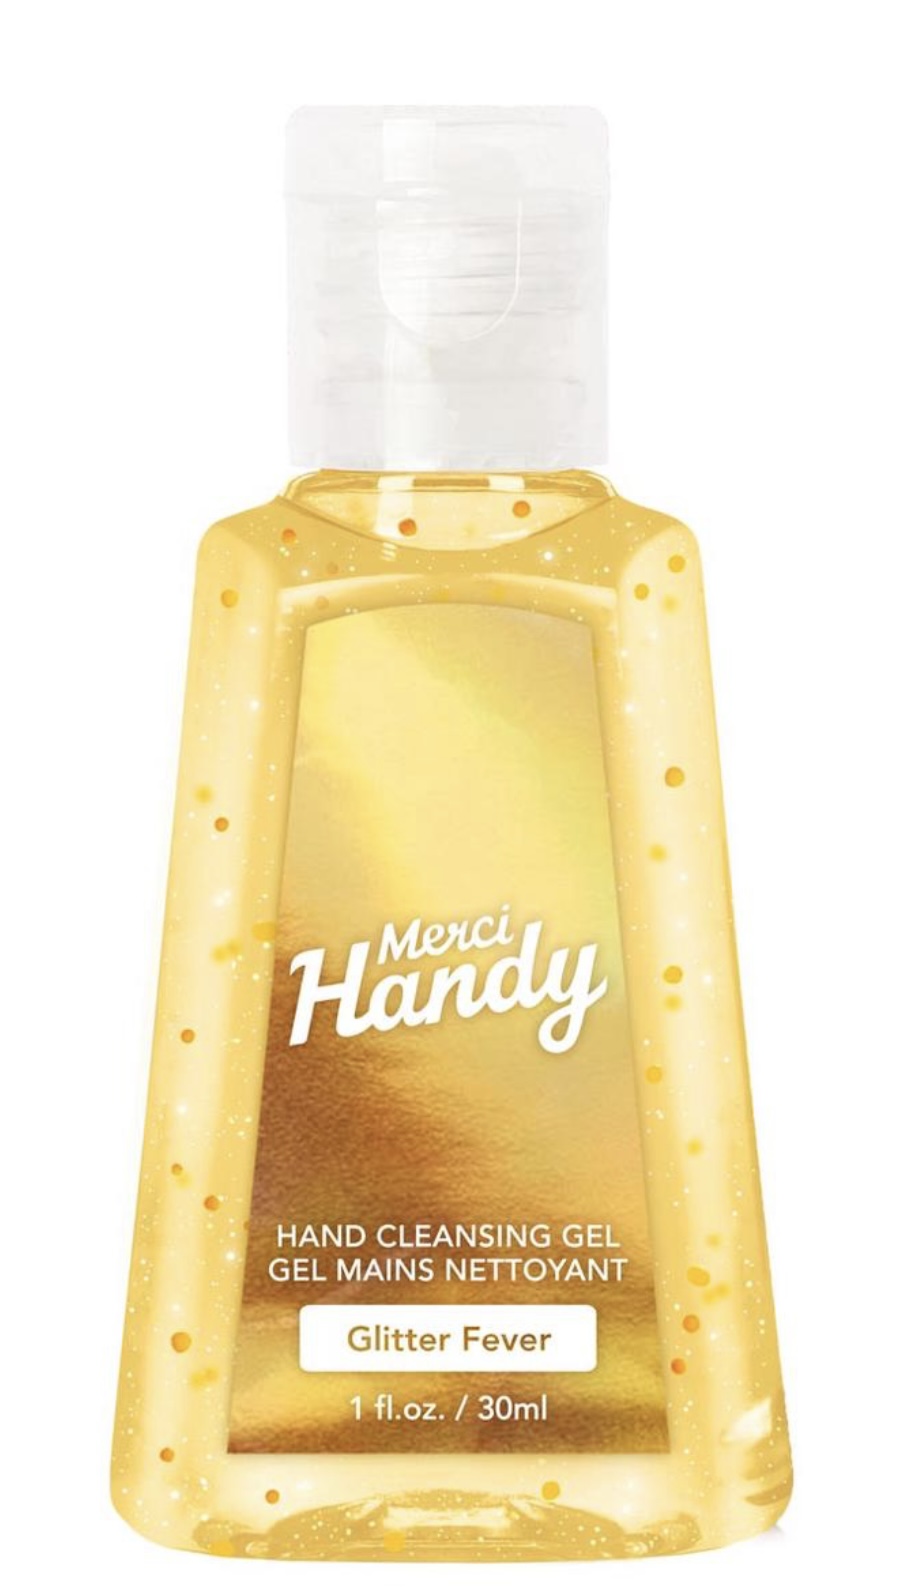 Merci Handy Hand Cleansing Gel Glitter Fever 30 ml